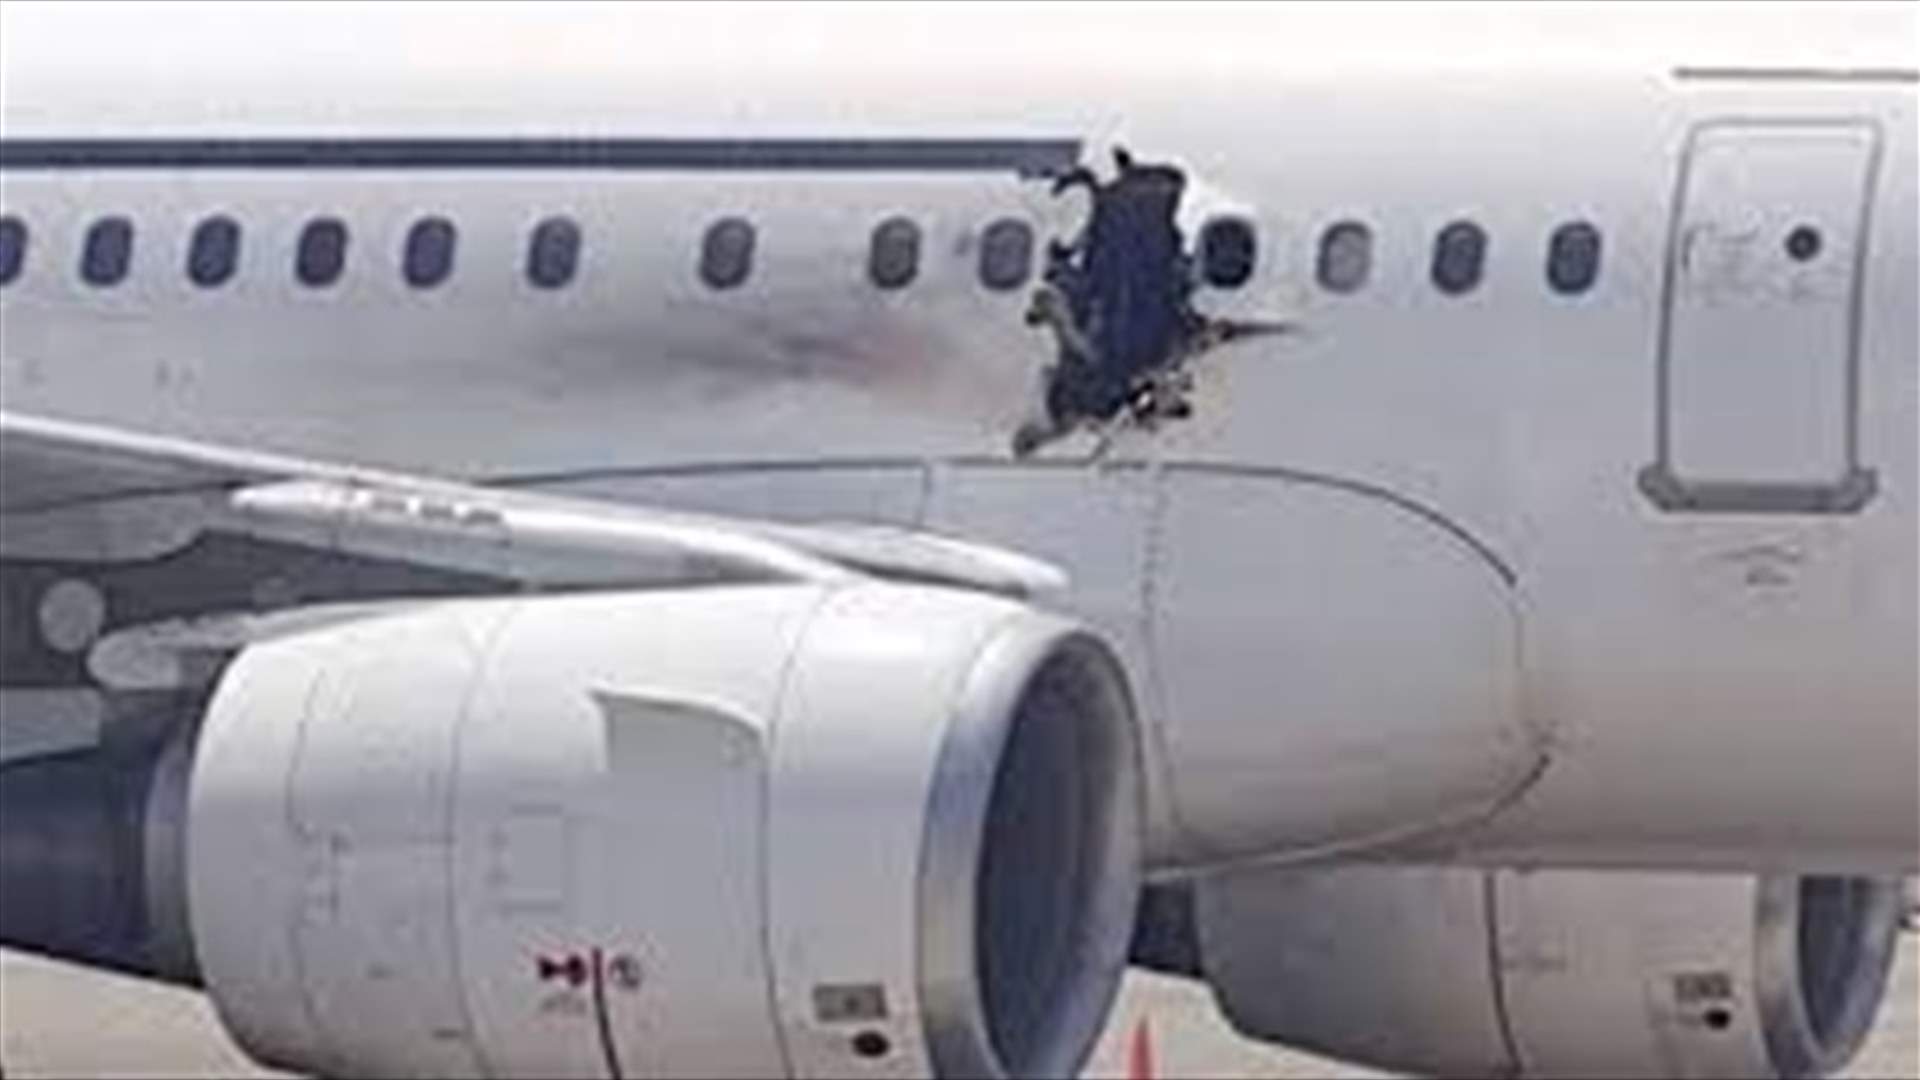 Somalia: Al-Shabab claims responsibility for plane bomb